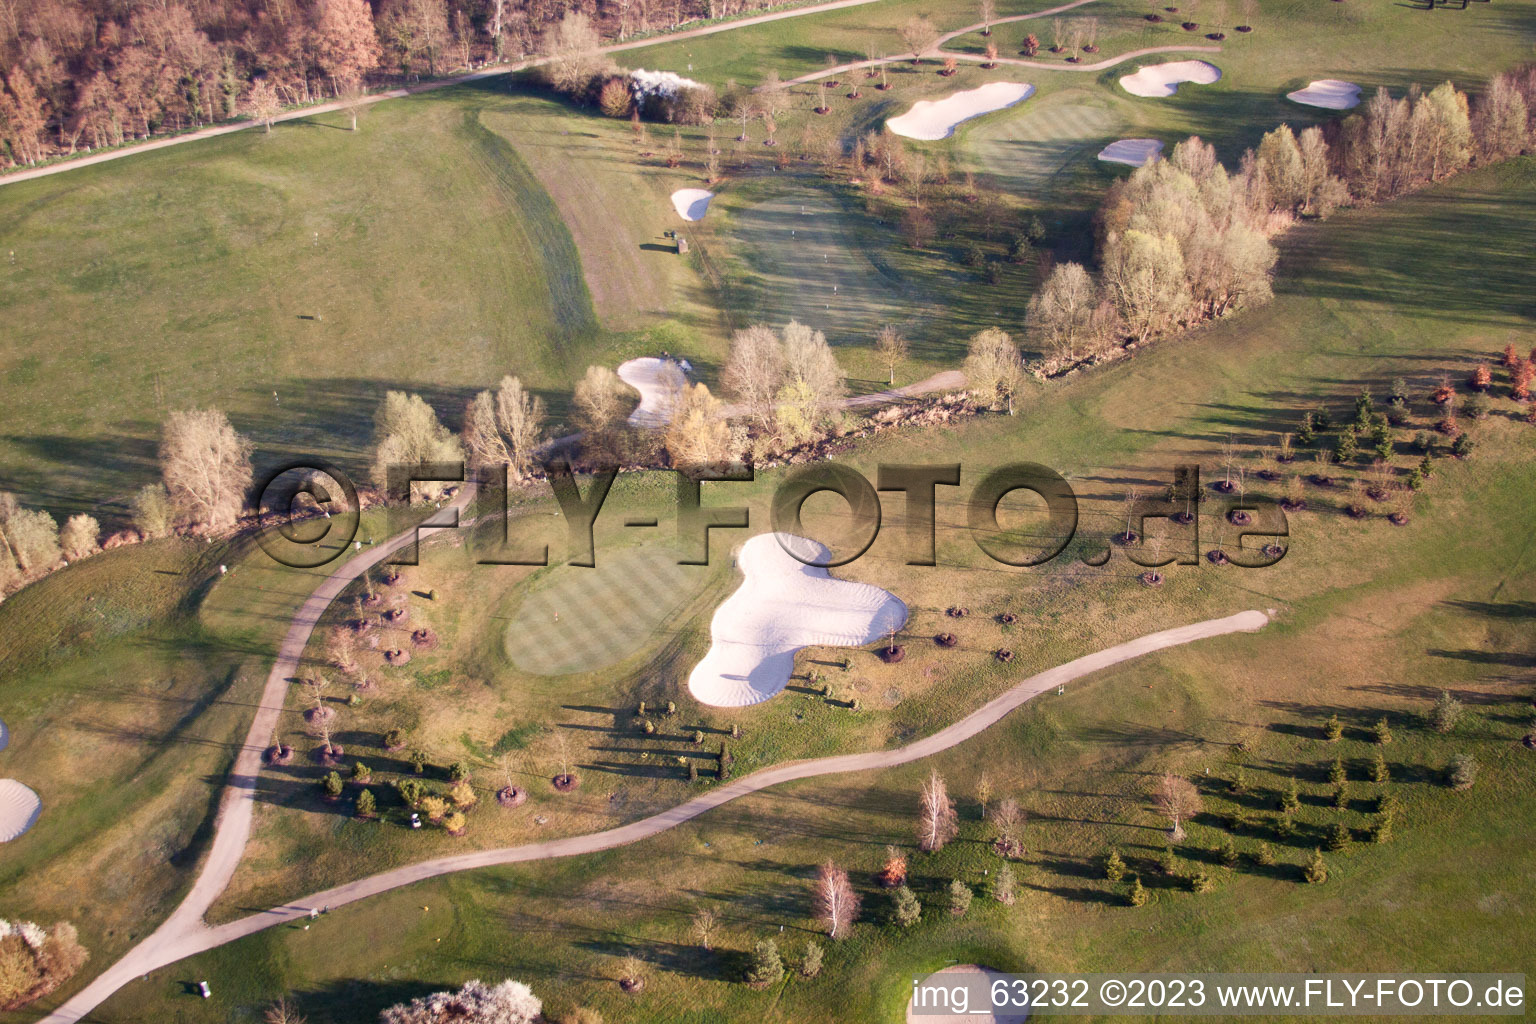 Golfclub Dreihof à Essingen dans le département Rhénanie-Palatinat, Allemagne vu d'un drone